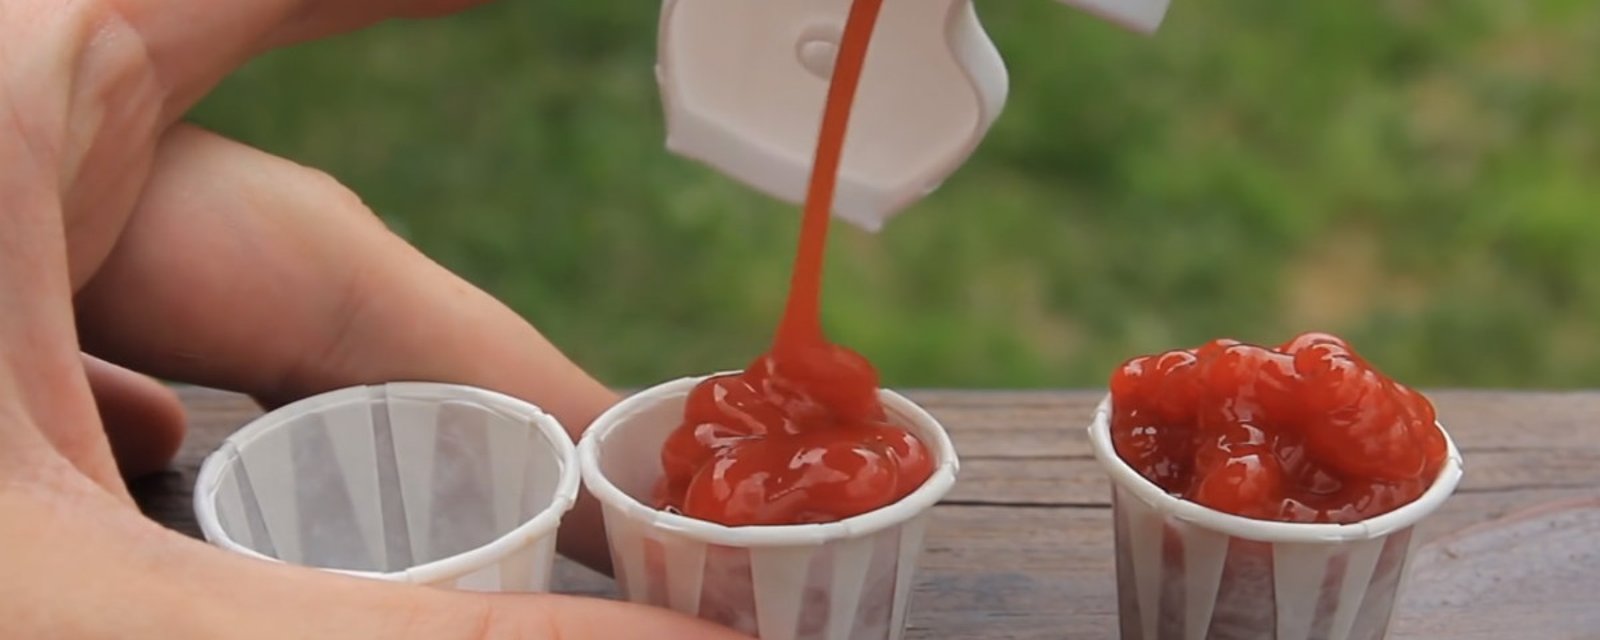 Sans le savoir, vous avez utilisé les contenants à Ketchup de la mauvaise manière toute votre vie!